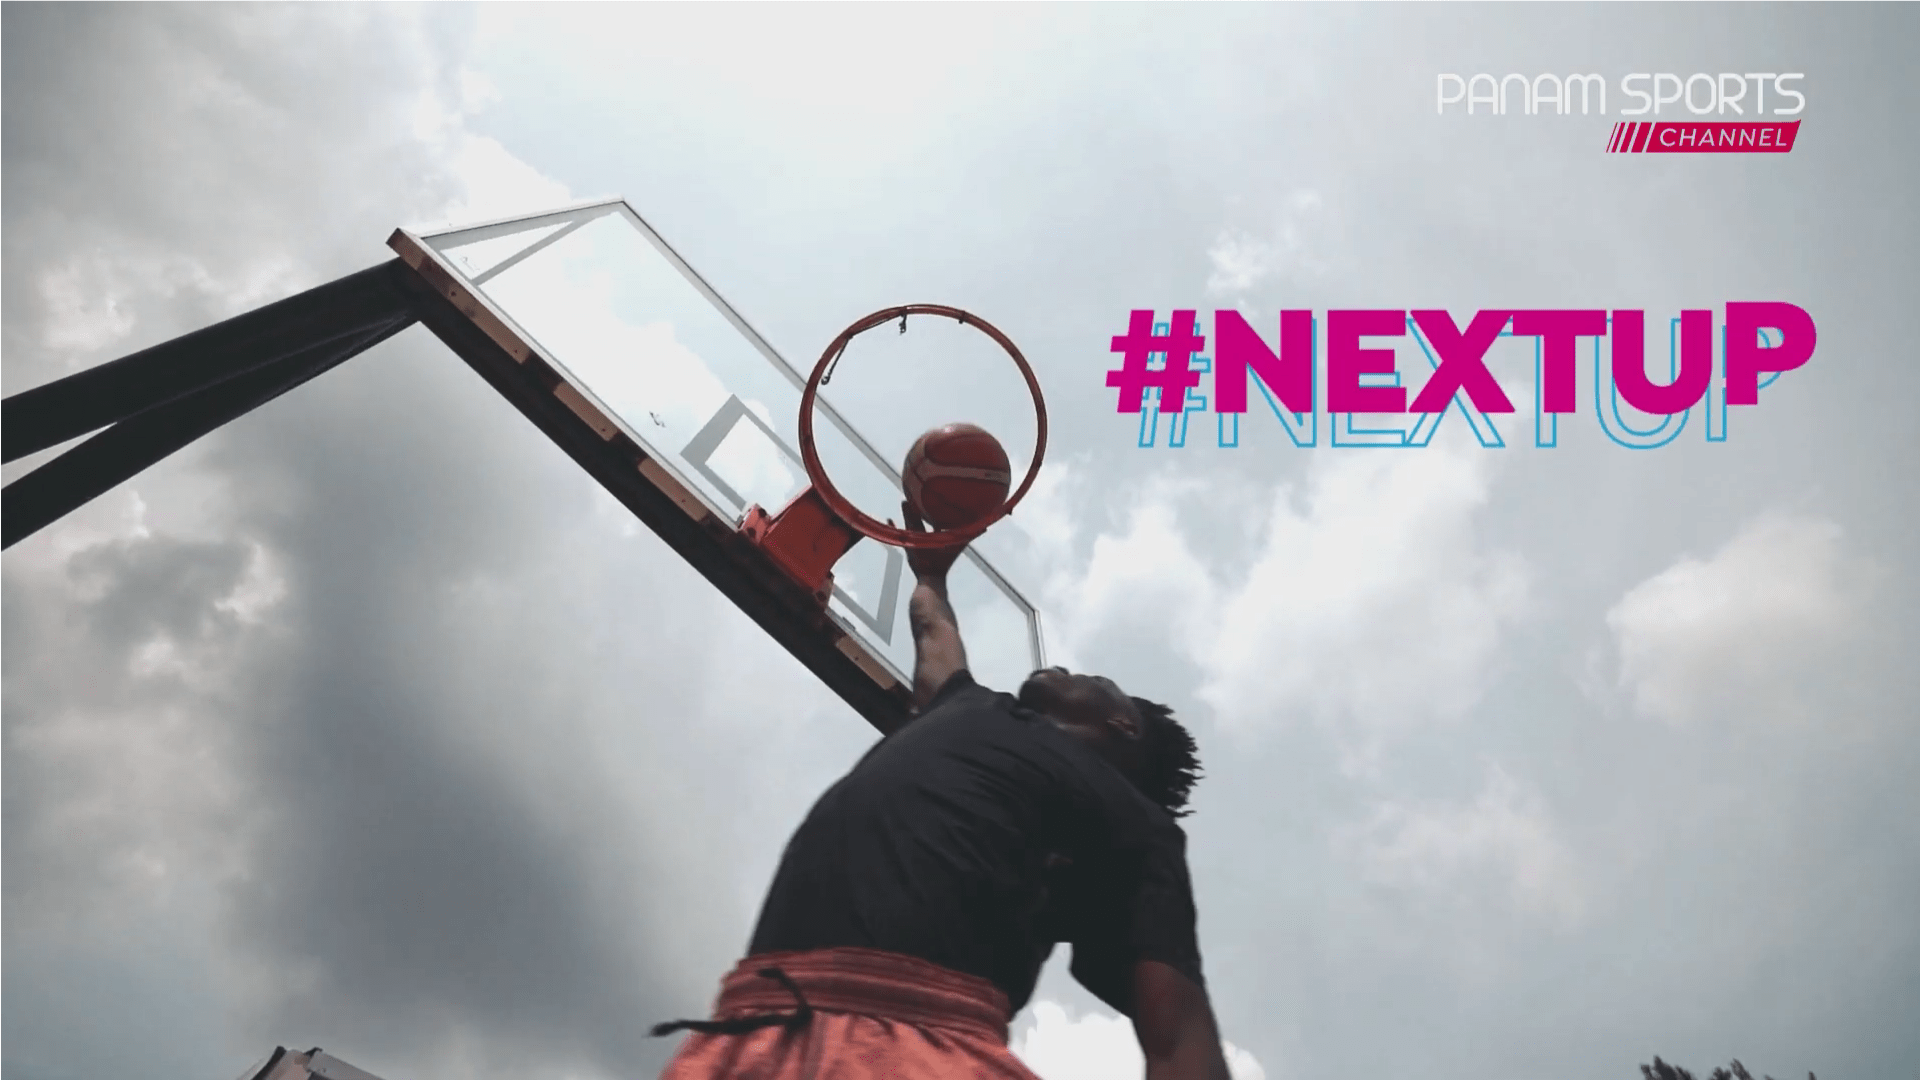 Panam Sports unveils Cali 2021 promotional campaign #NextUp